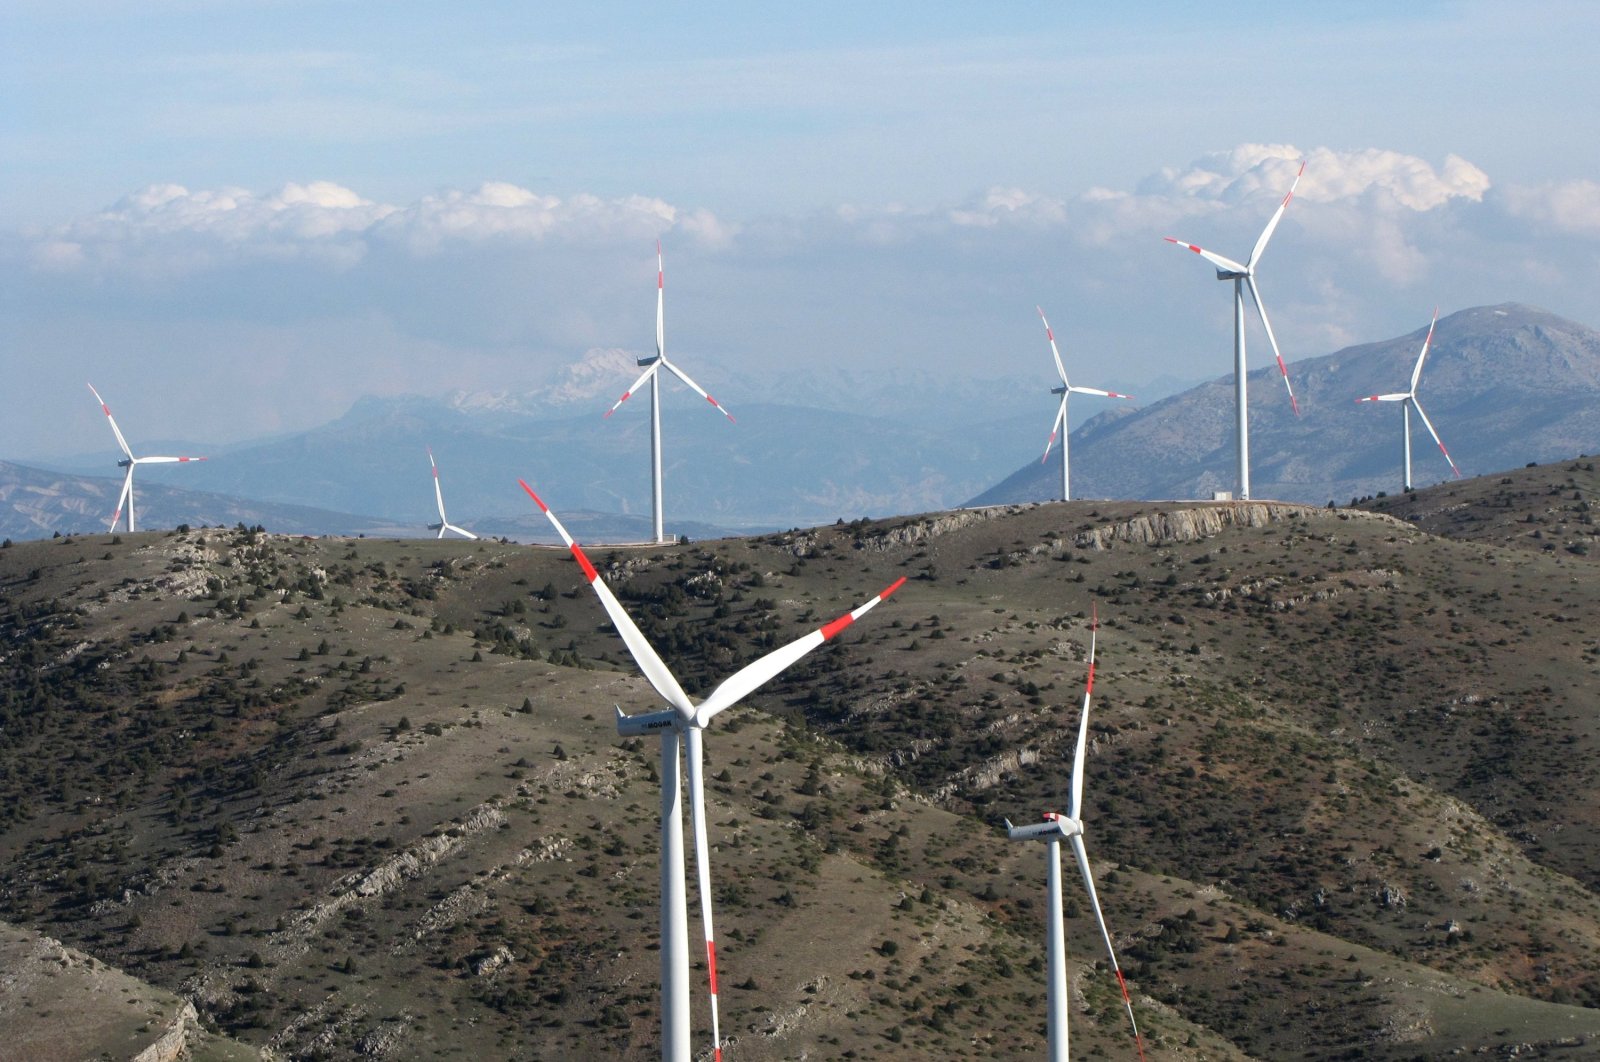 Türkiye untuk mencapai 30 gigawatt kapasitas terpasang energi angin pada tahun 2035